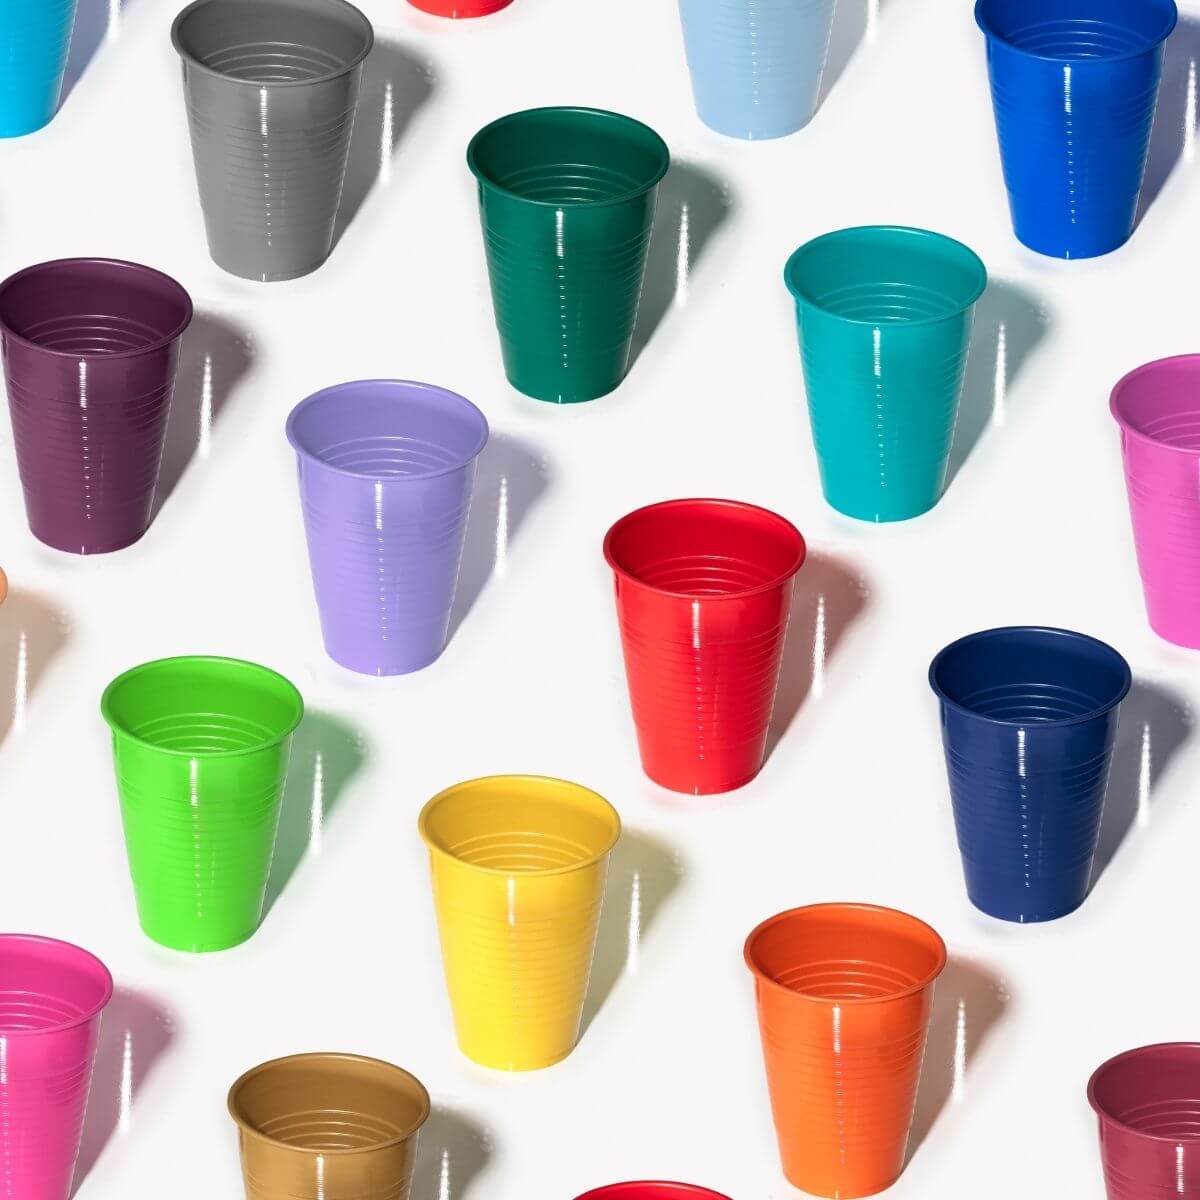 12 Oz. | Purple Plastic Cups | 600 Count - Yom Tov Settings